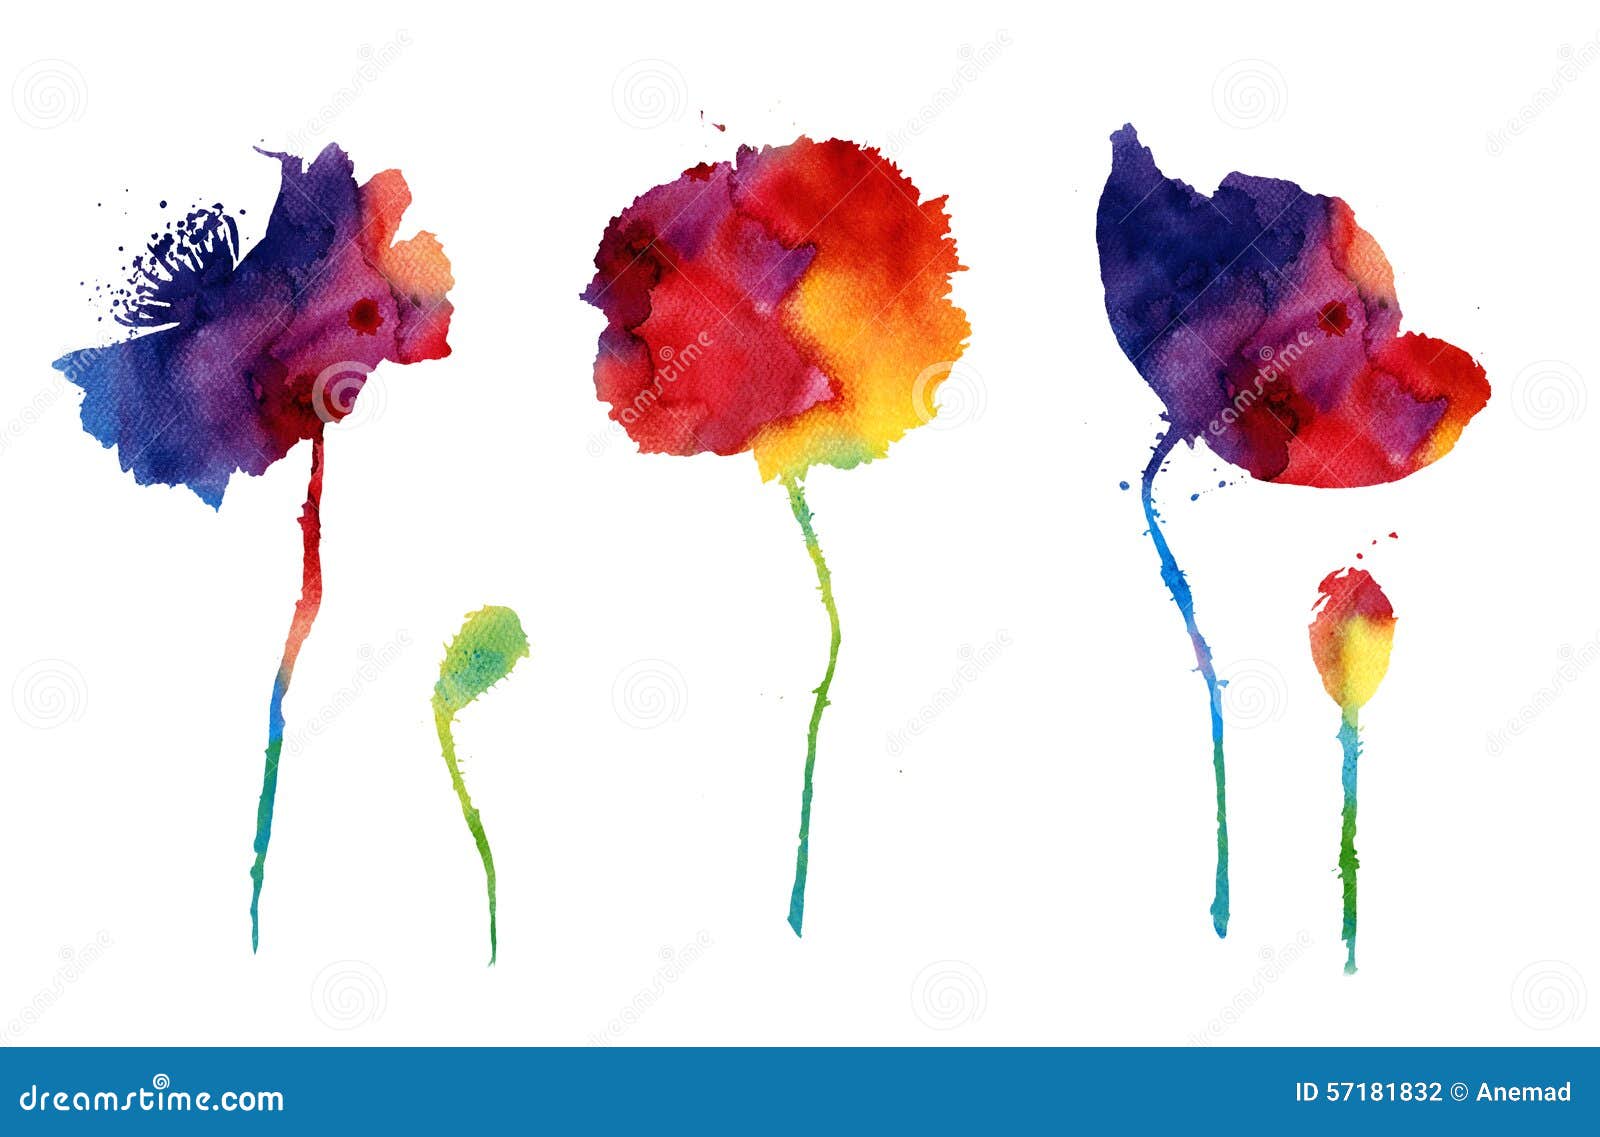 Aquarelle Avec Les Fleurs Abstraites De Pavot Illustration Stock -  Illustration du floral, saison: 57181832